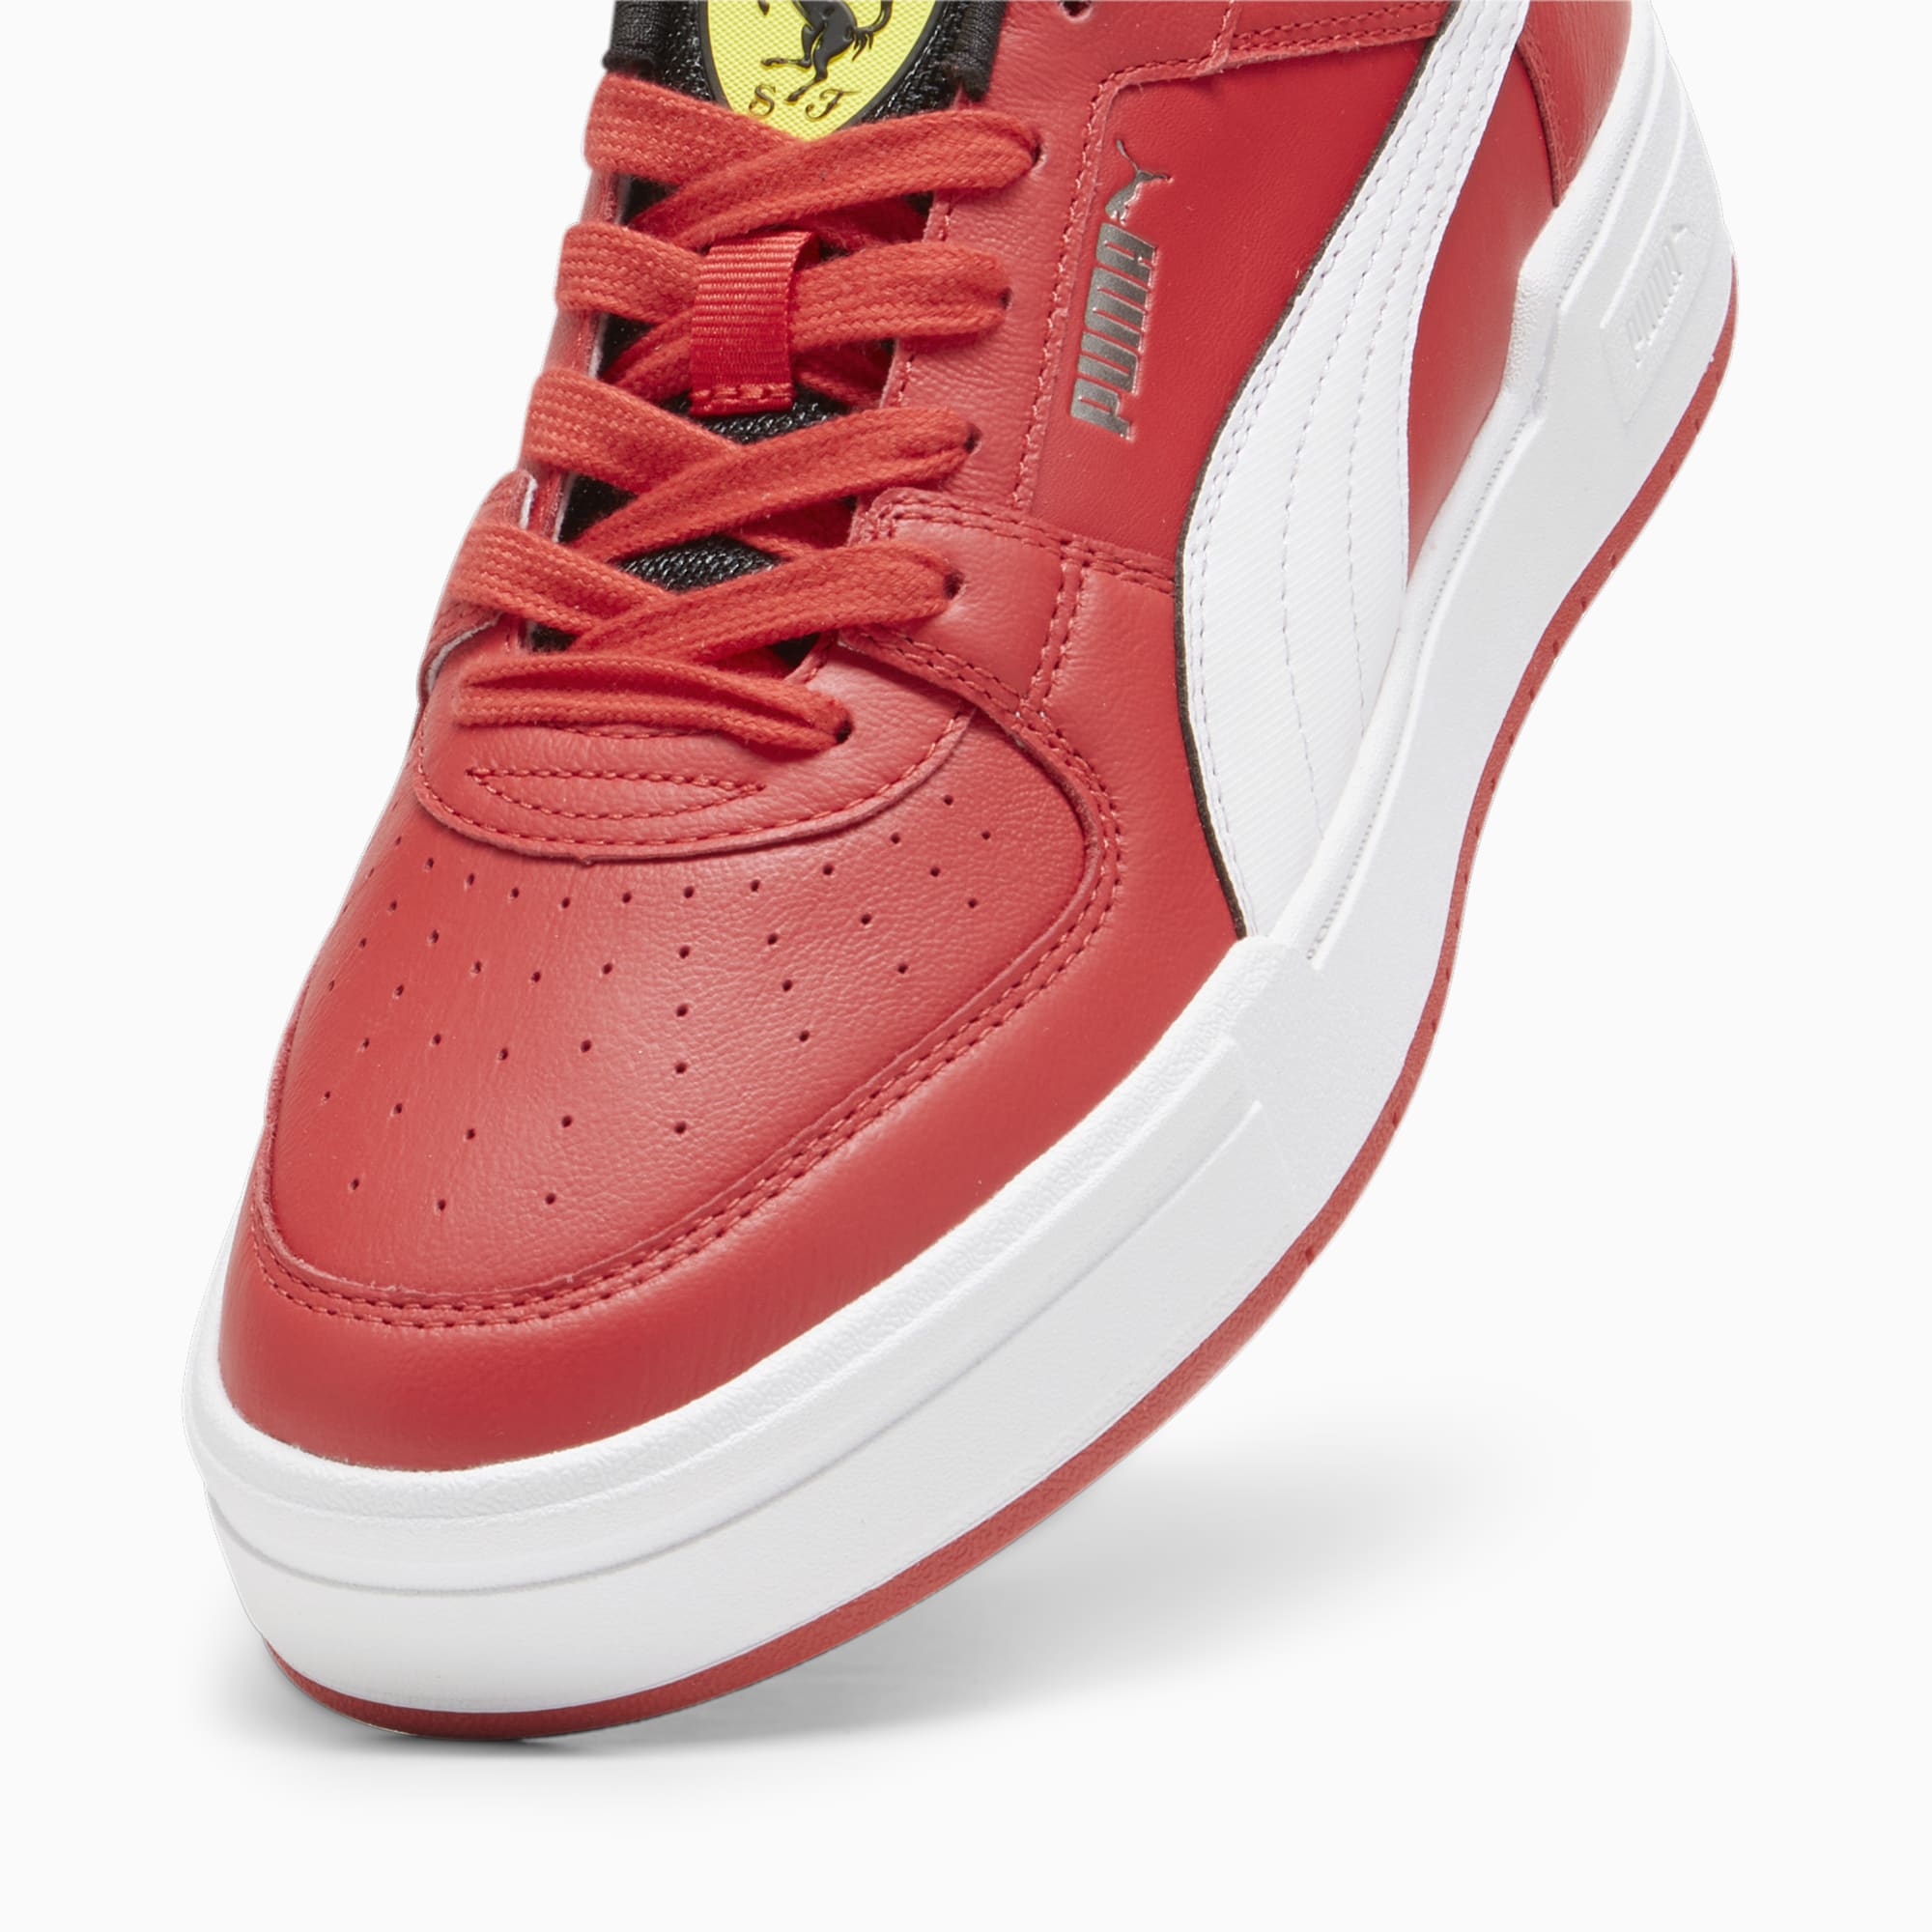 PUMA Scuderia Ferrari CA Pro Sneakers Schuhe, Rot/Weiß, Größe: 41, Schuhe